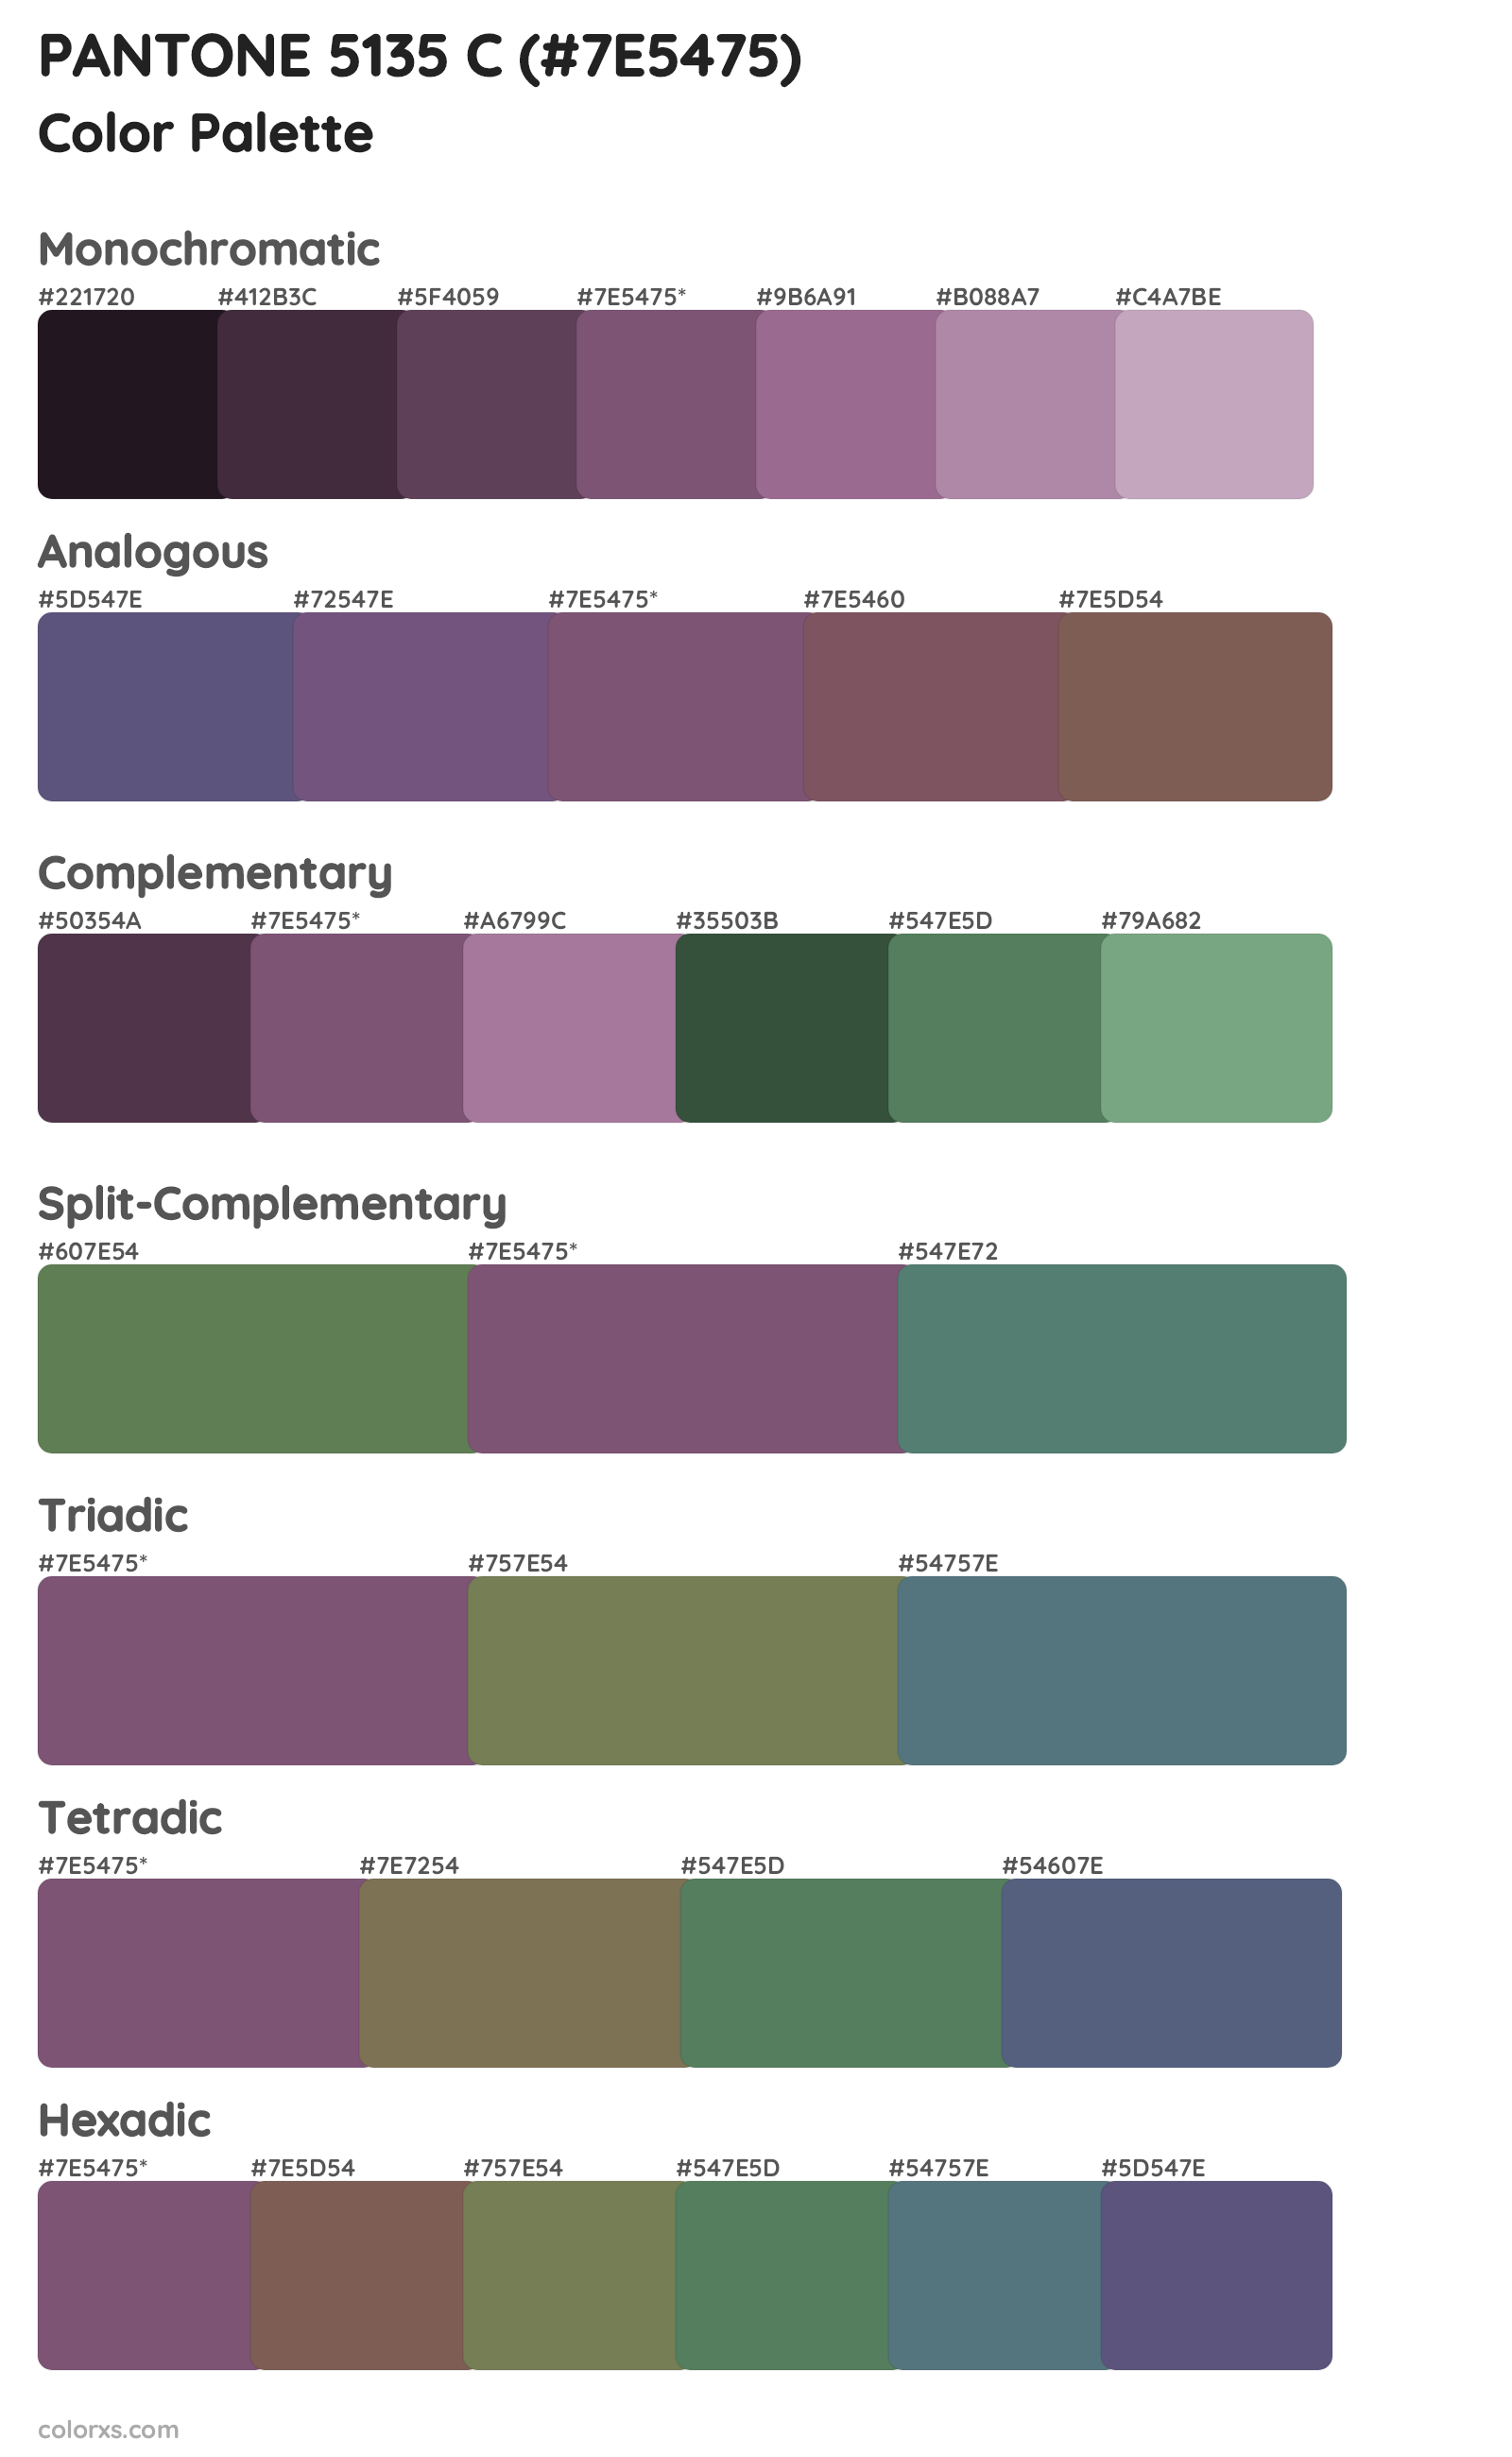 PANTONE 5135 C Color Scheme Palettes